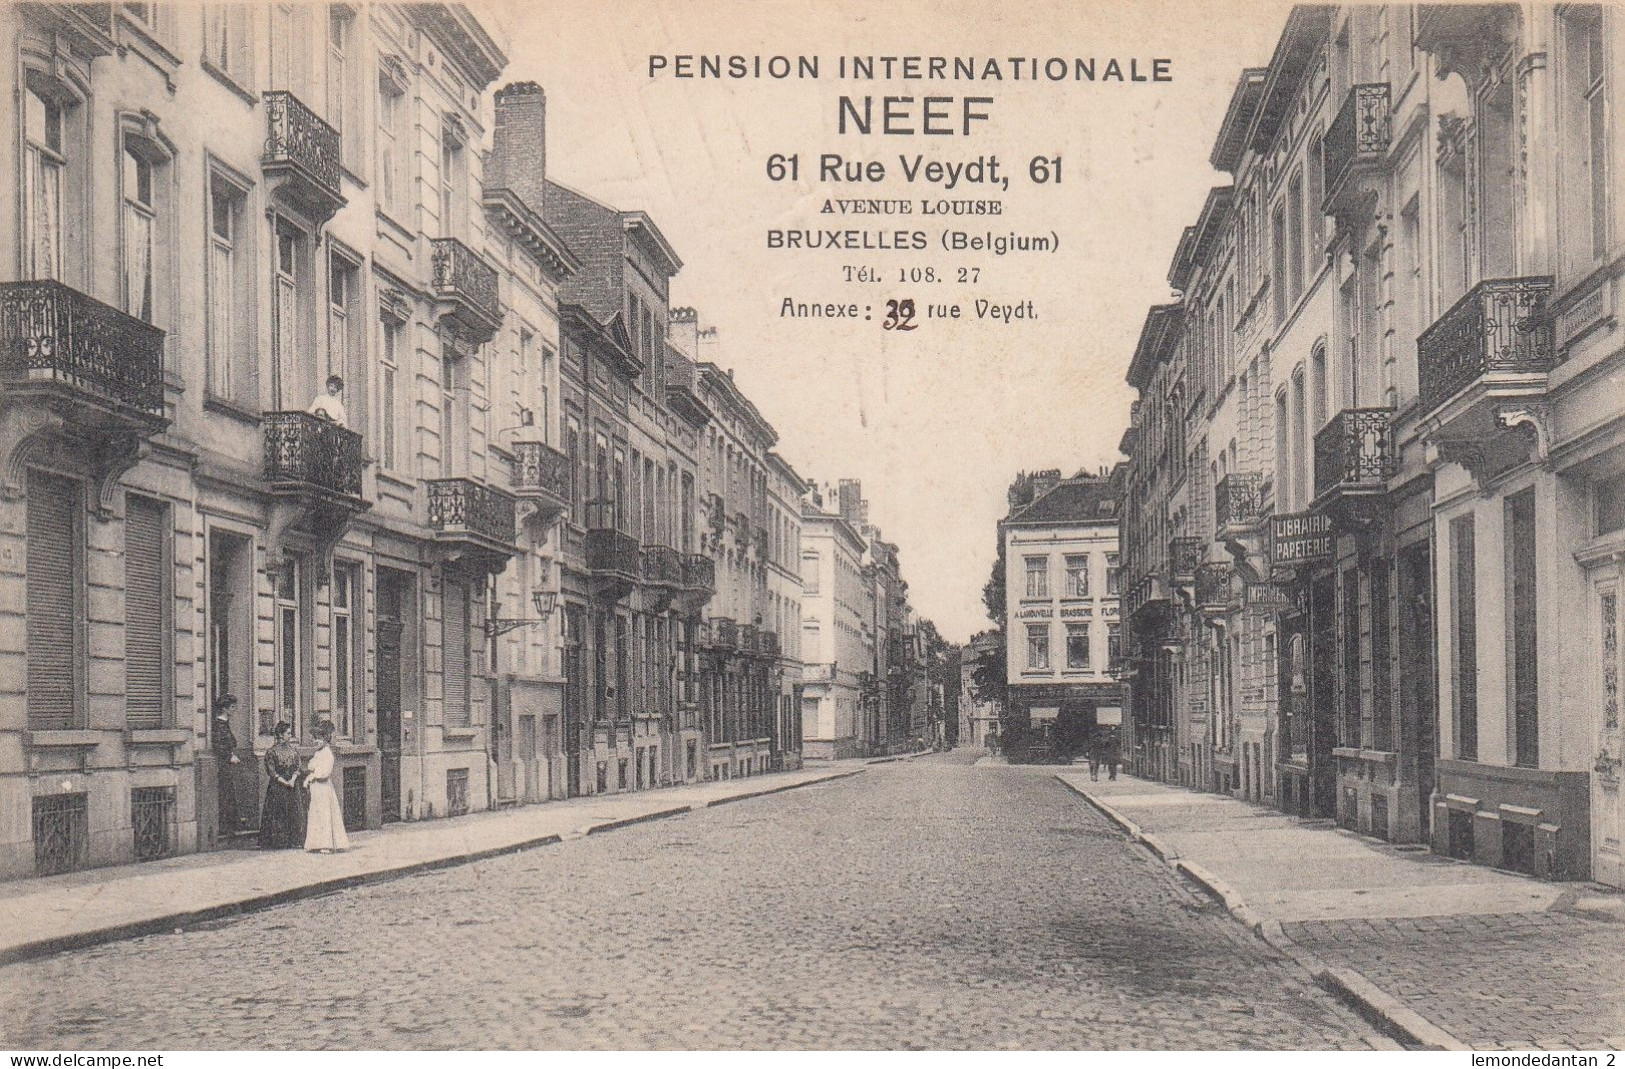 Bruxelles - Avenue Louise - Pension Internationale Neef - Rue Veydt - Bruxelles-ville